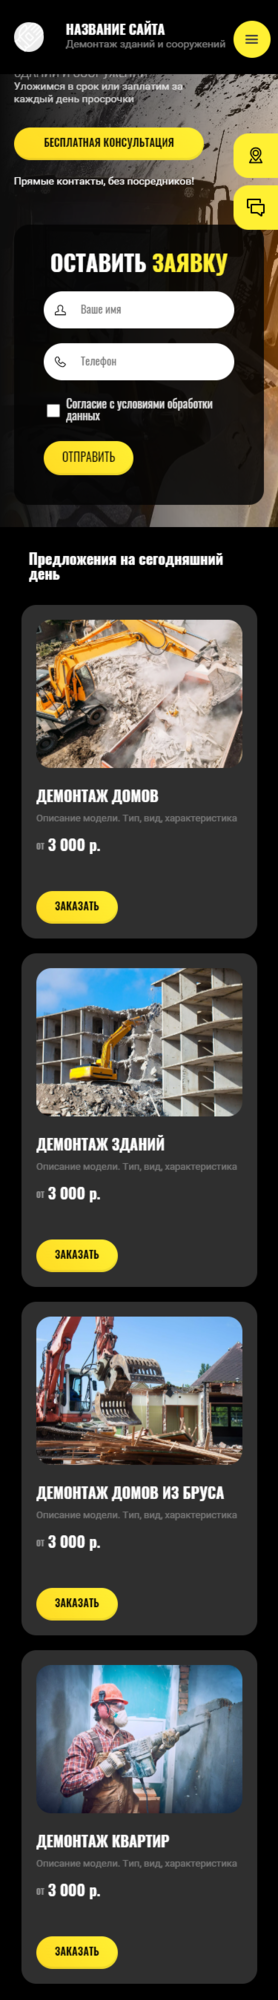 Готовый Сайт-Бизнес № 3696580 - Демонтаж зданий и сооружений (Мобильная версия)